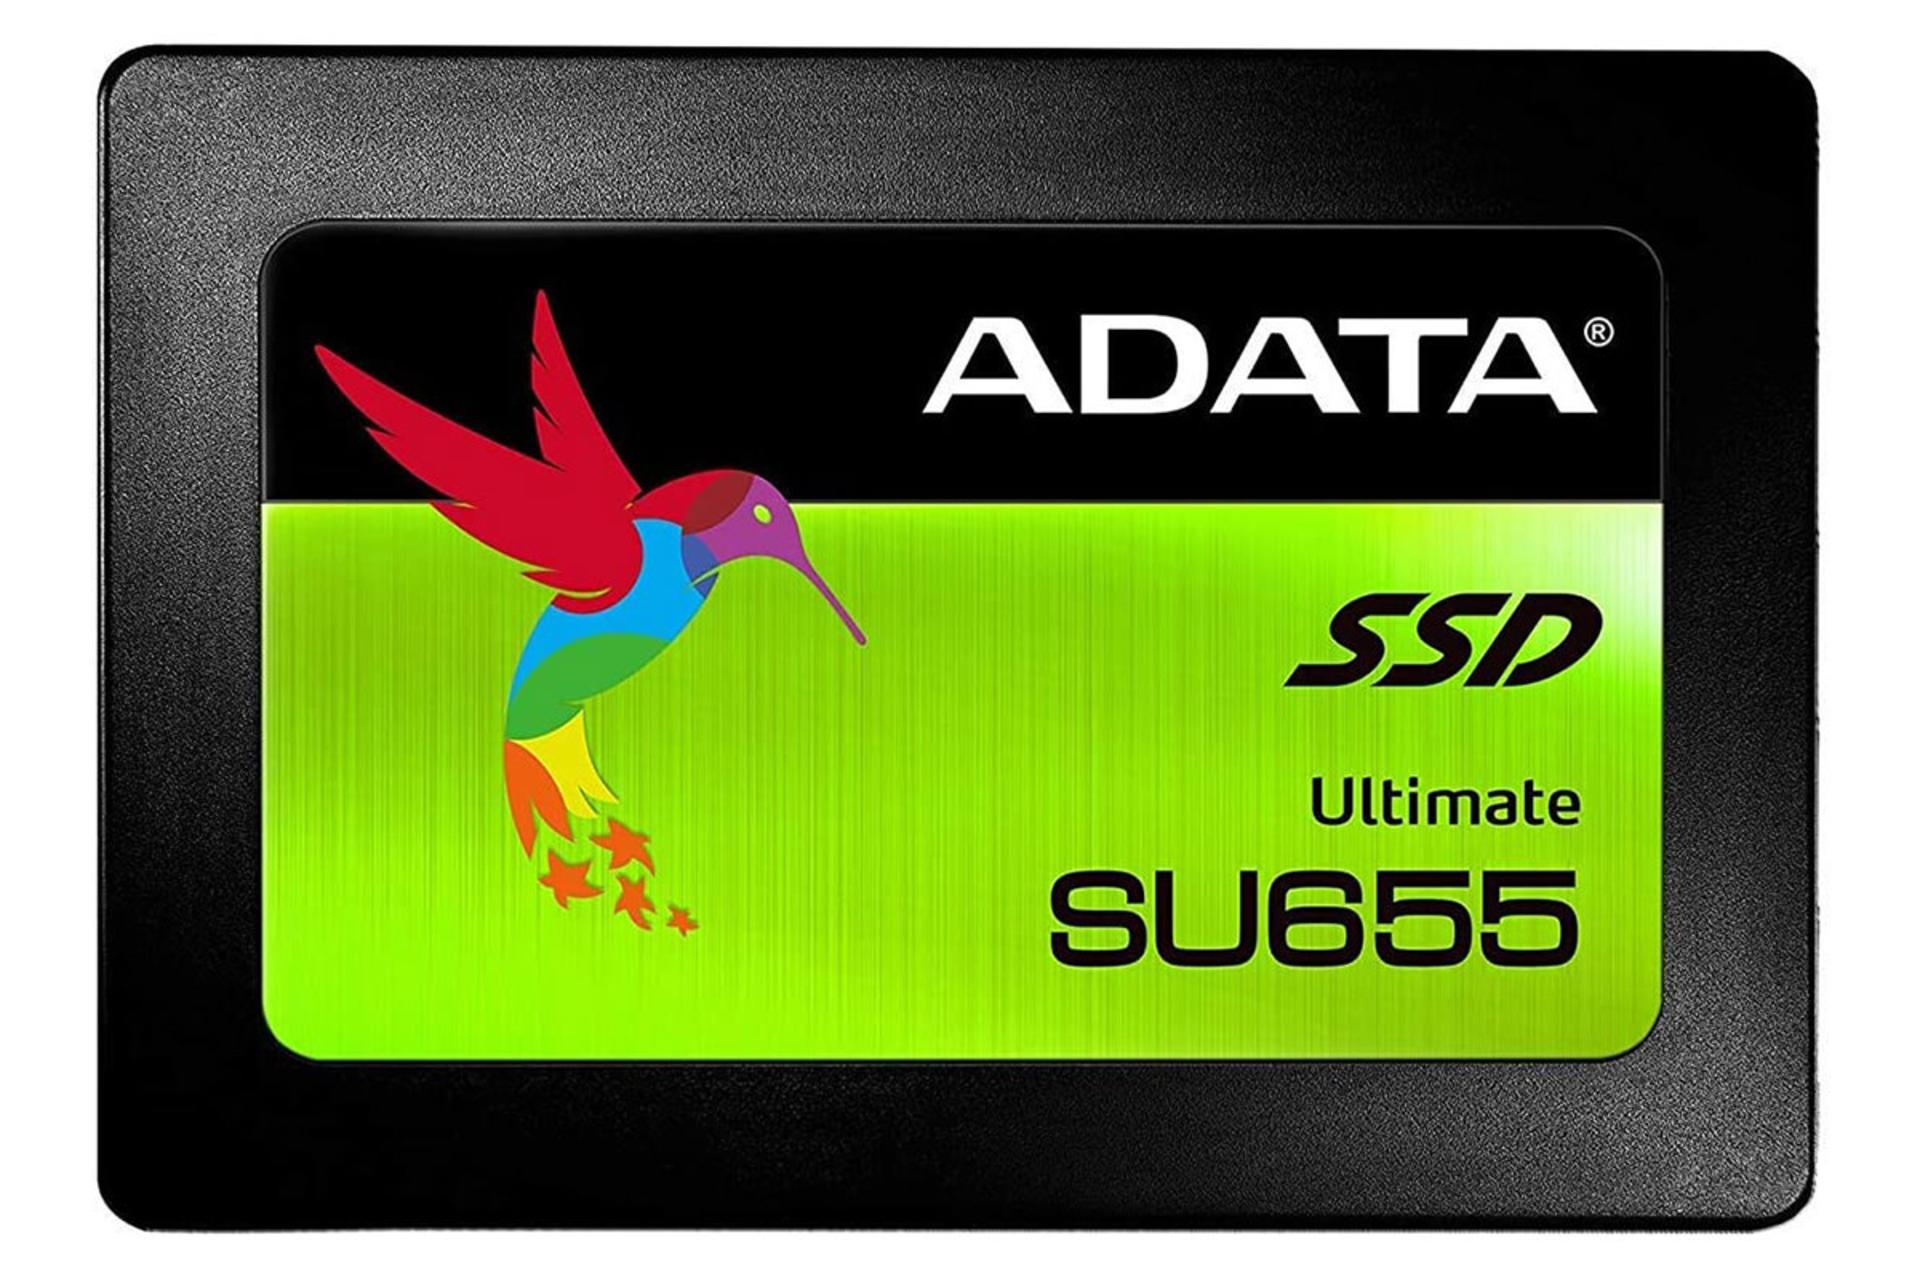 ای دیتا  ADATA Ultimate SU655 / Ultimate SU655